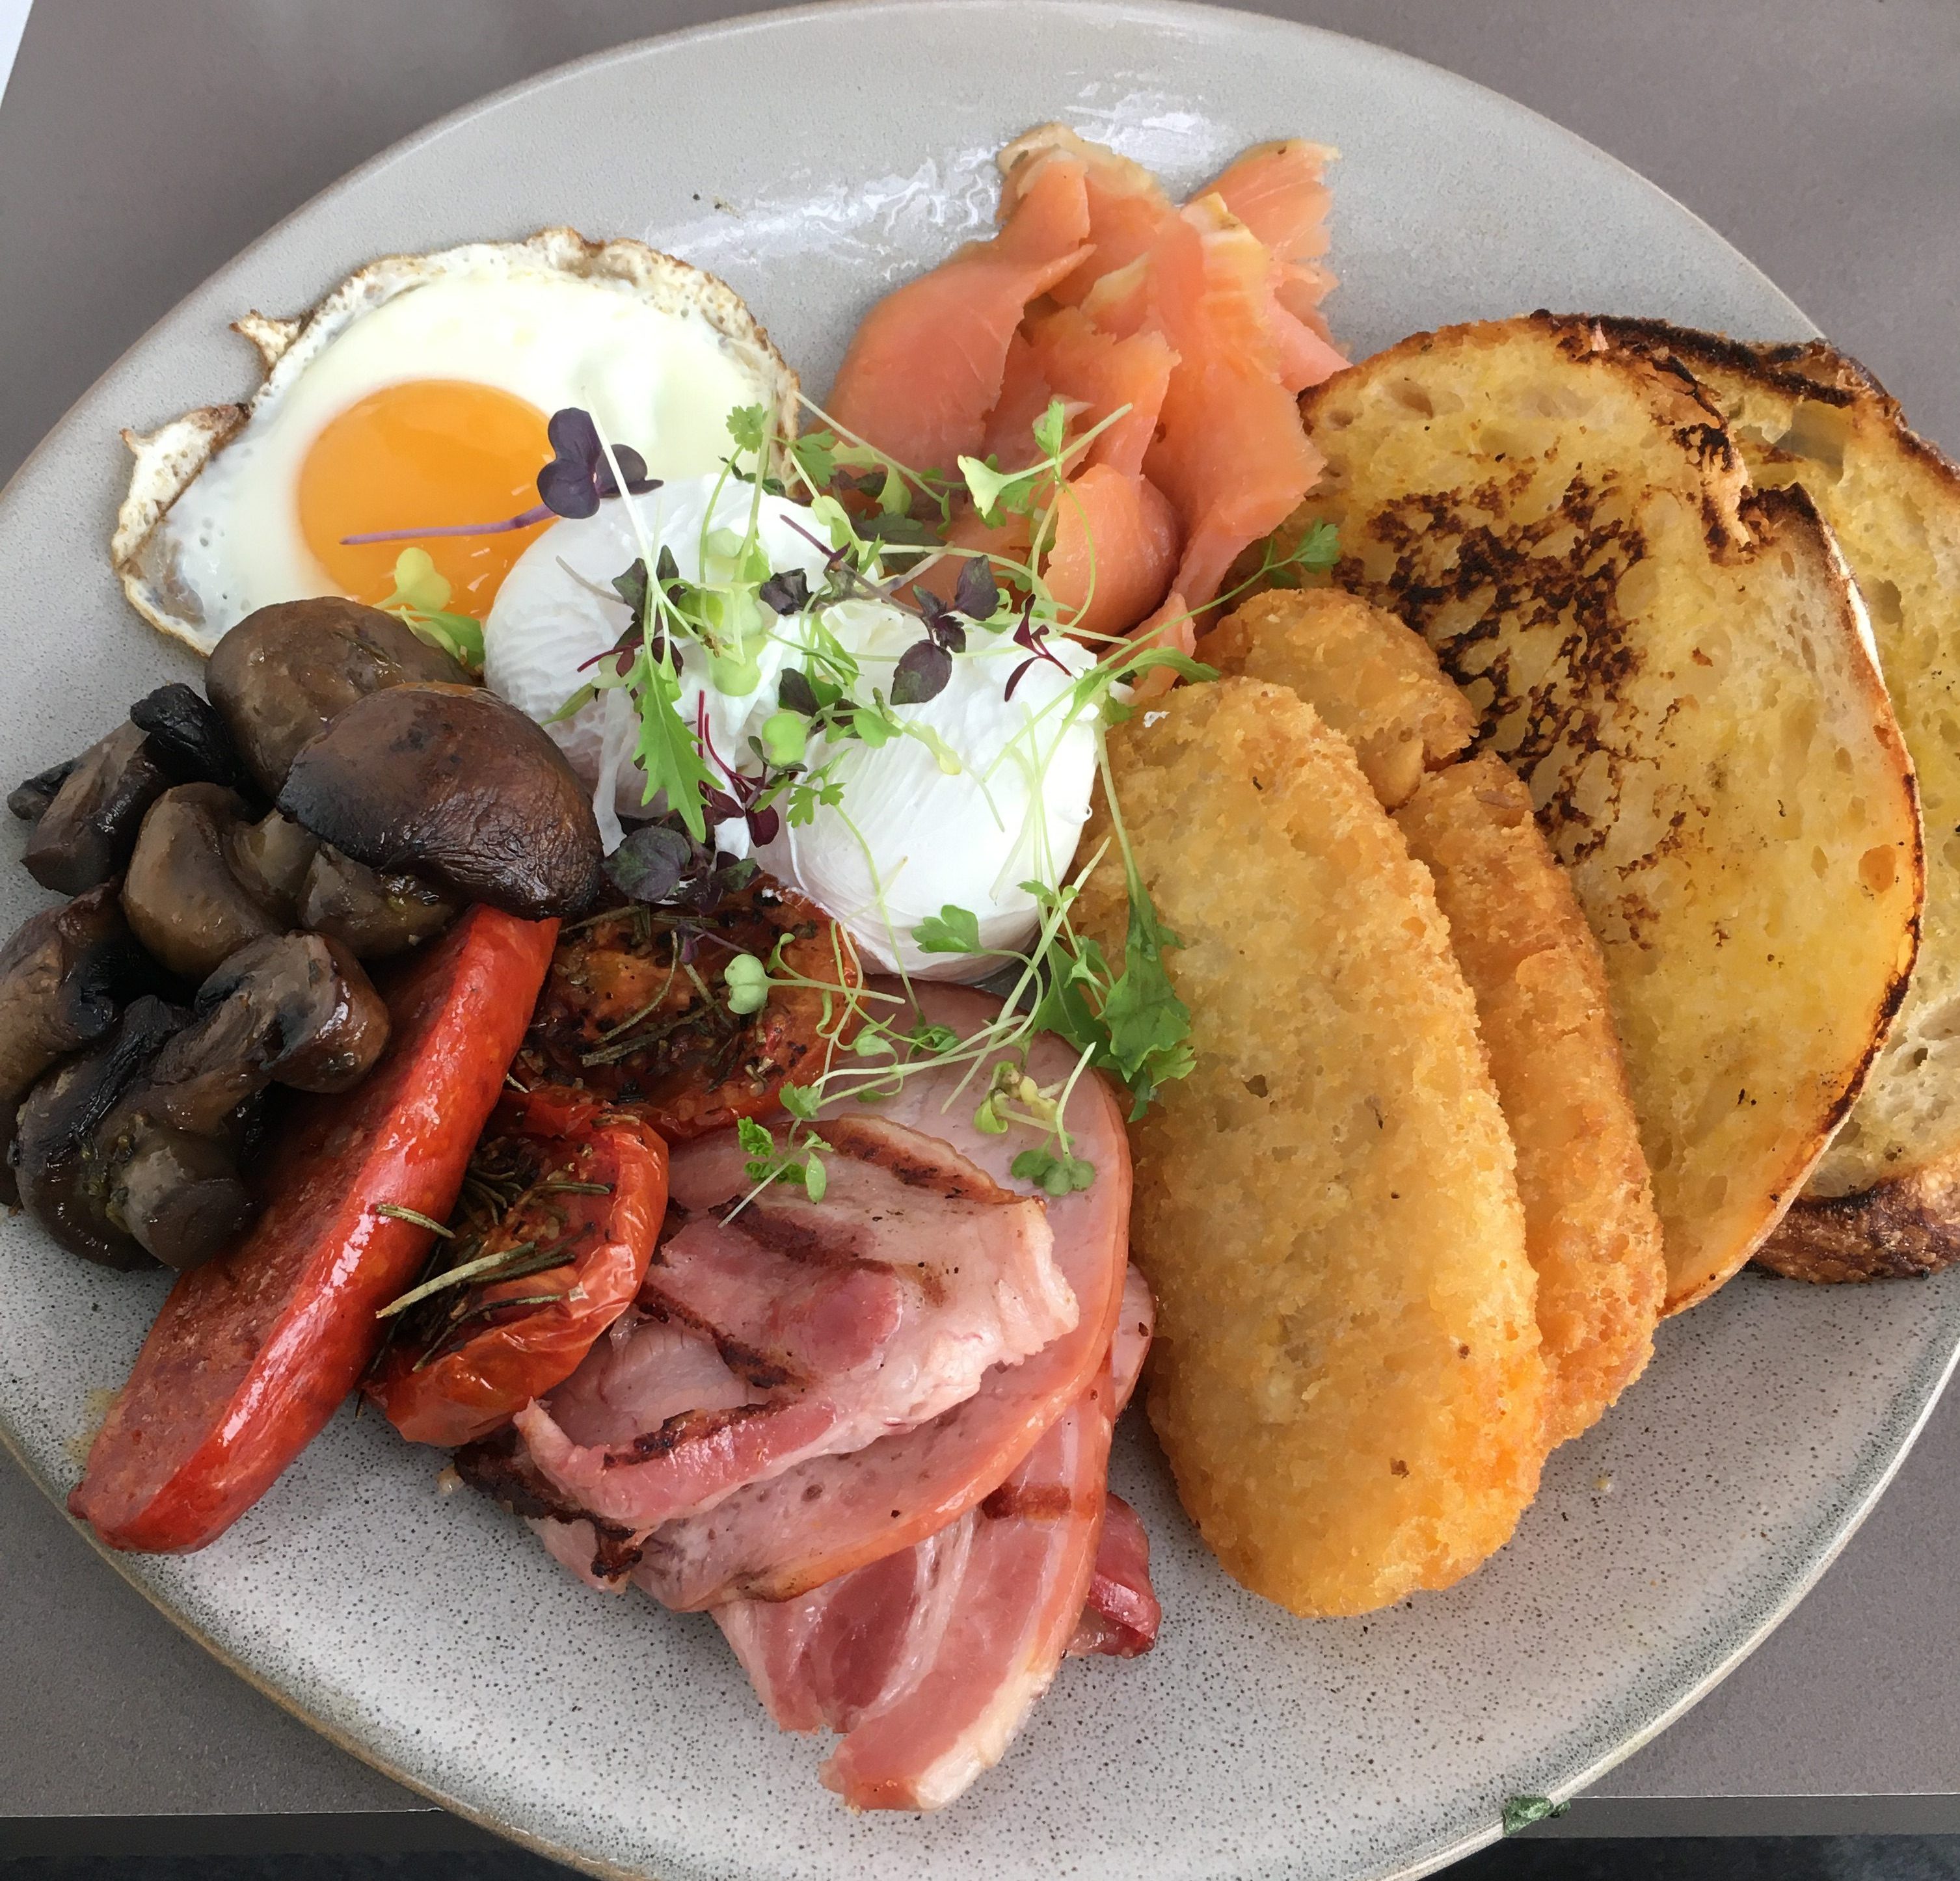 Big Breakfast: Plumb soars to great heights in Fyshwick